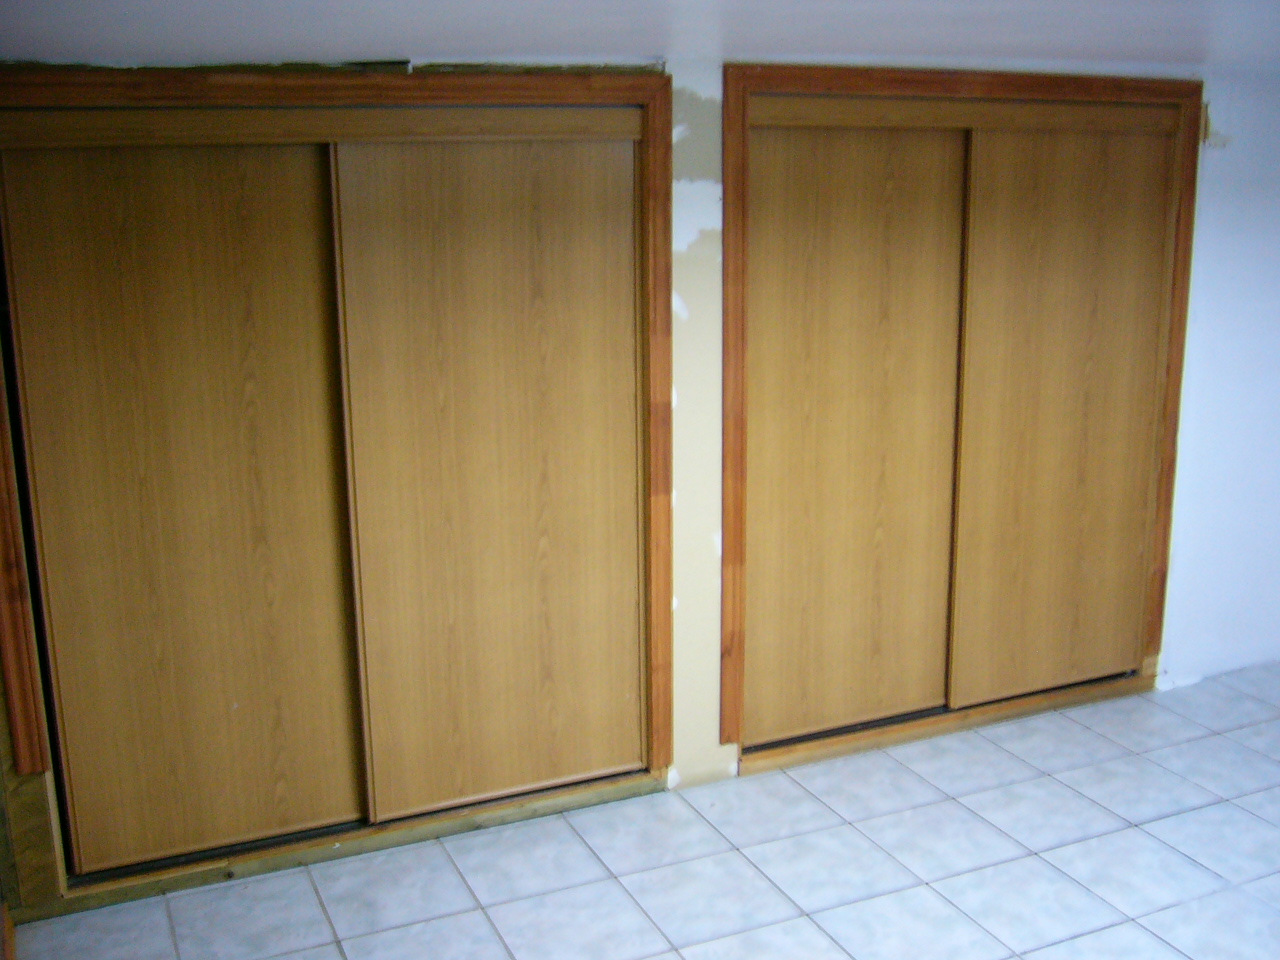 wood cupboards with door and tile floor in empty room